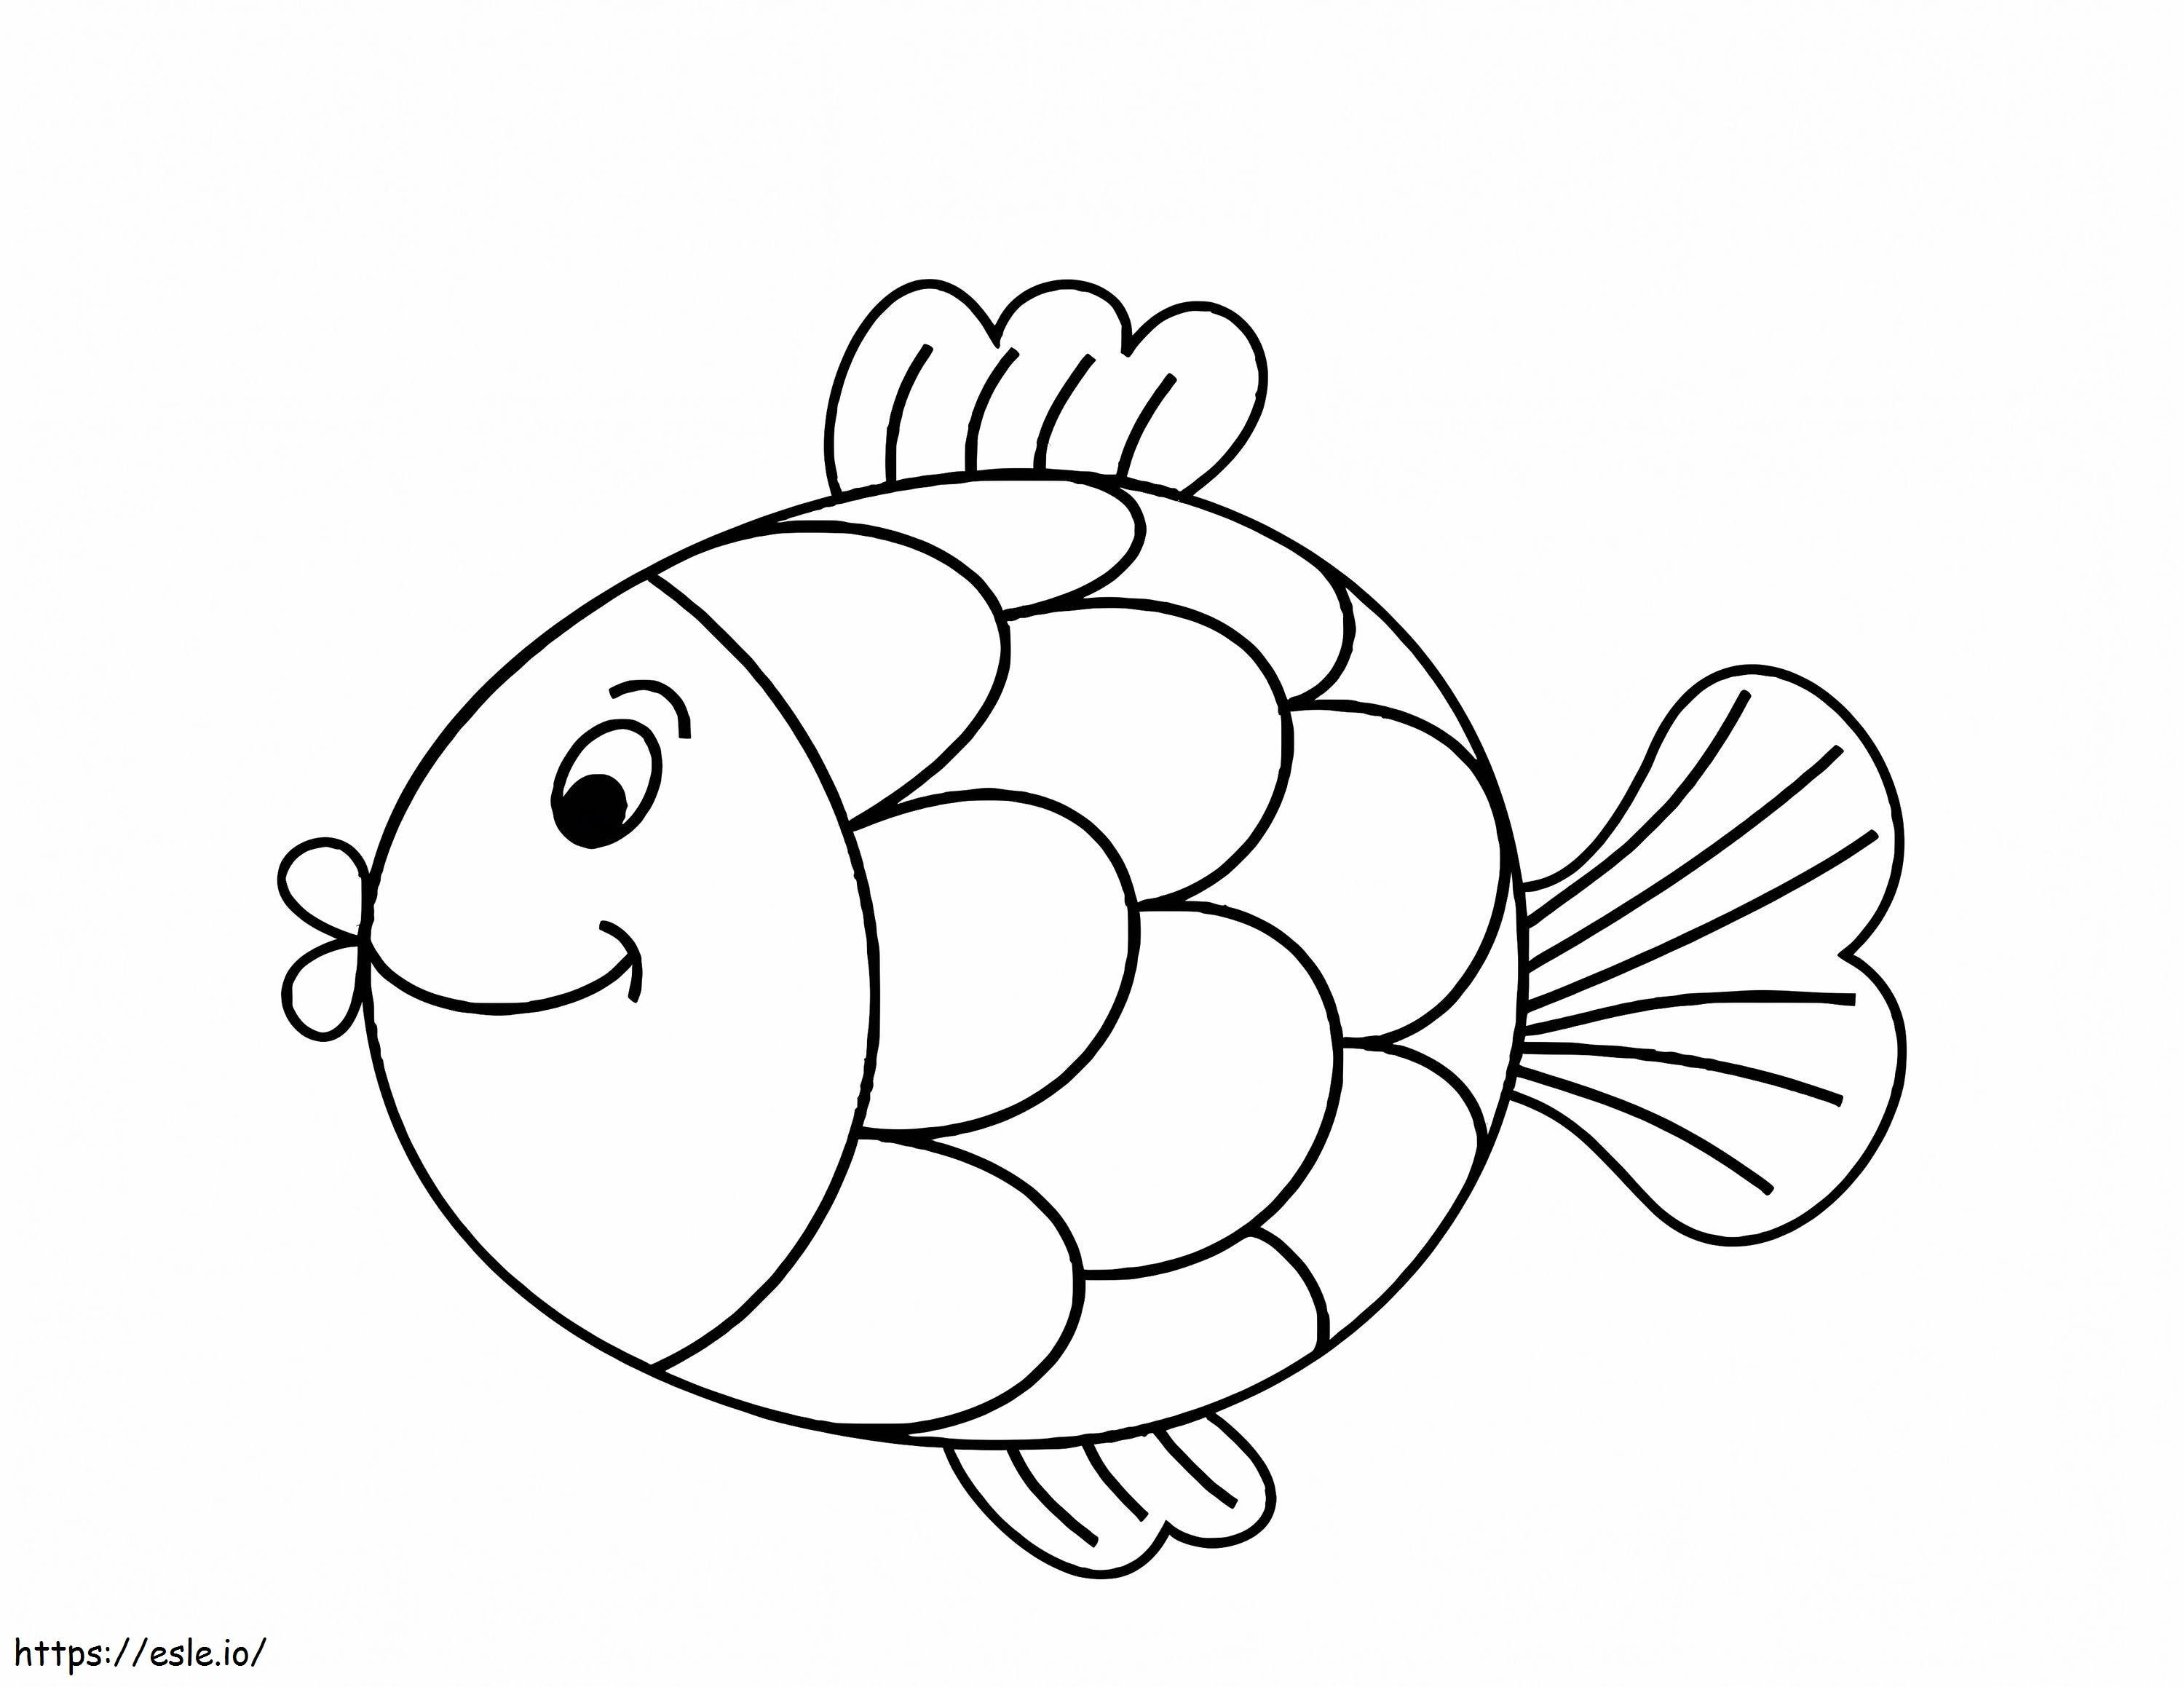 Lächelnder Cartoon-Regenbogenfisch ausmalbilder